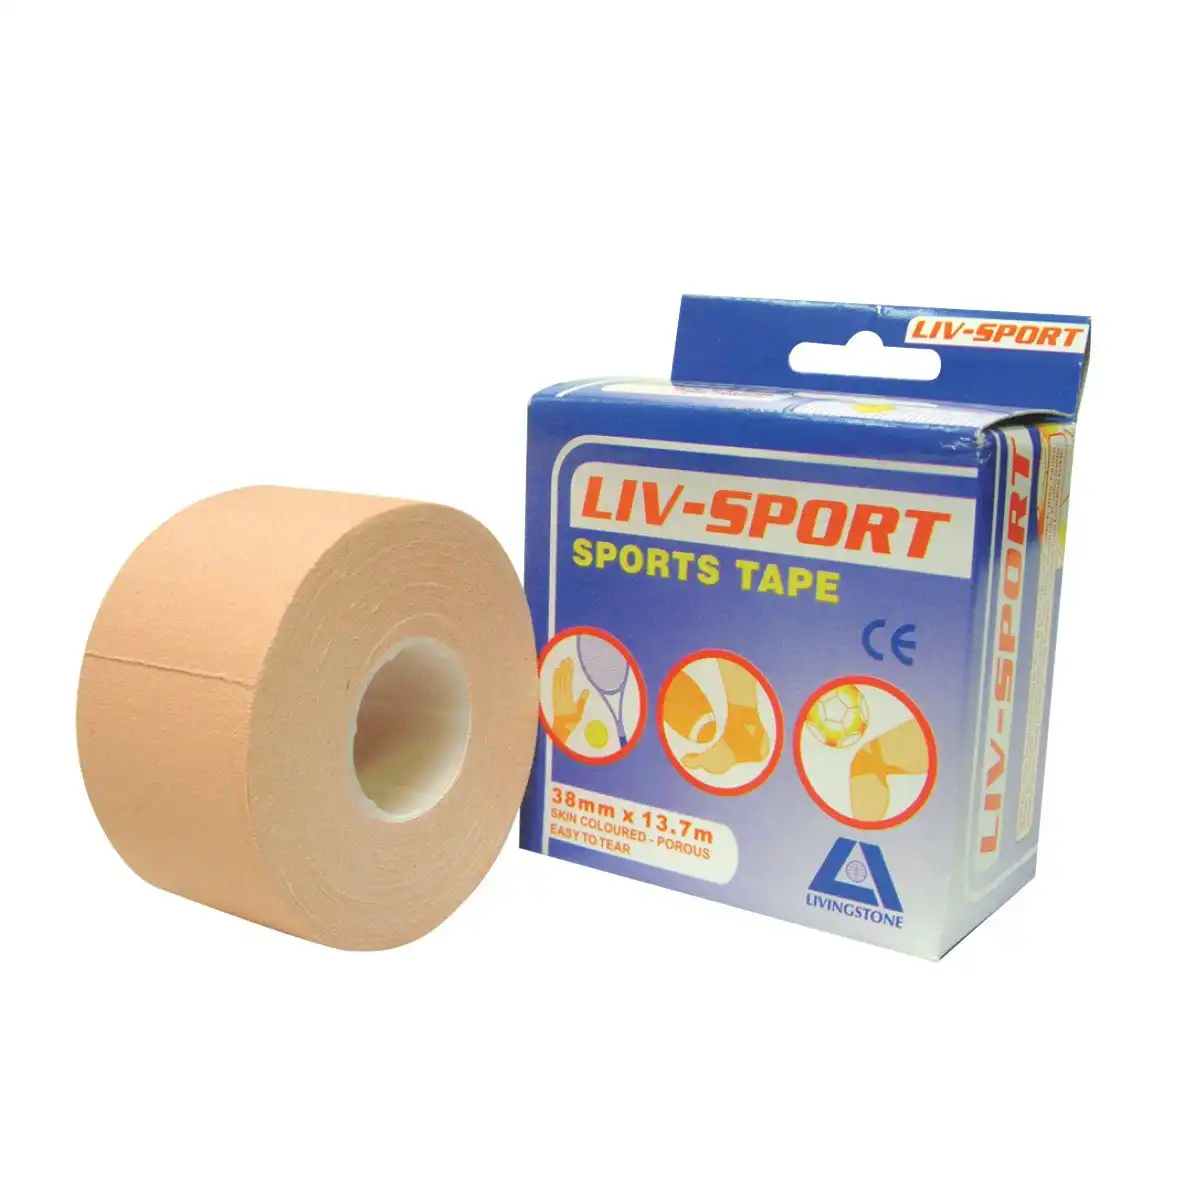 Liv-Sport Premium Rigid Strapping Sports Tape Tan 38 mm x 13.7m